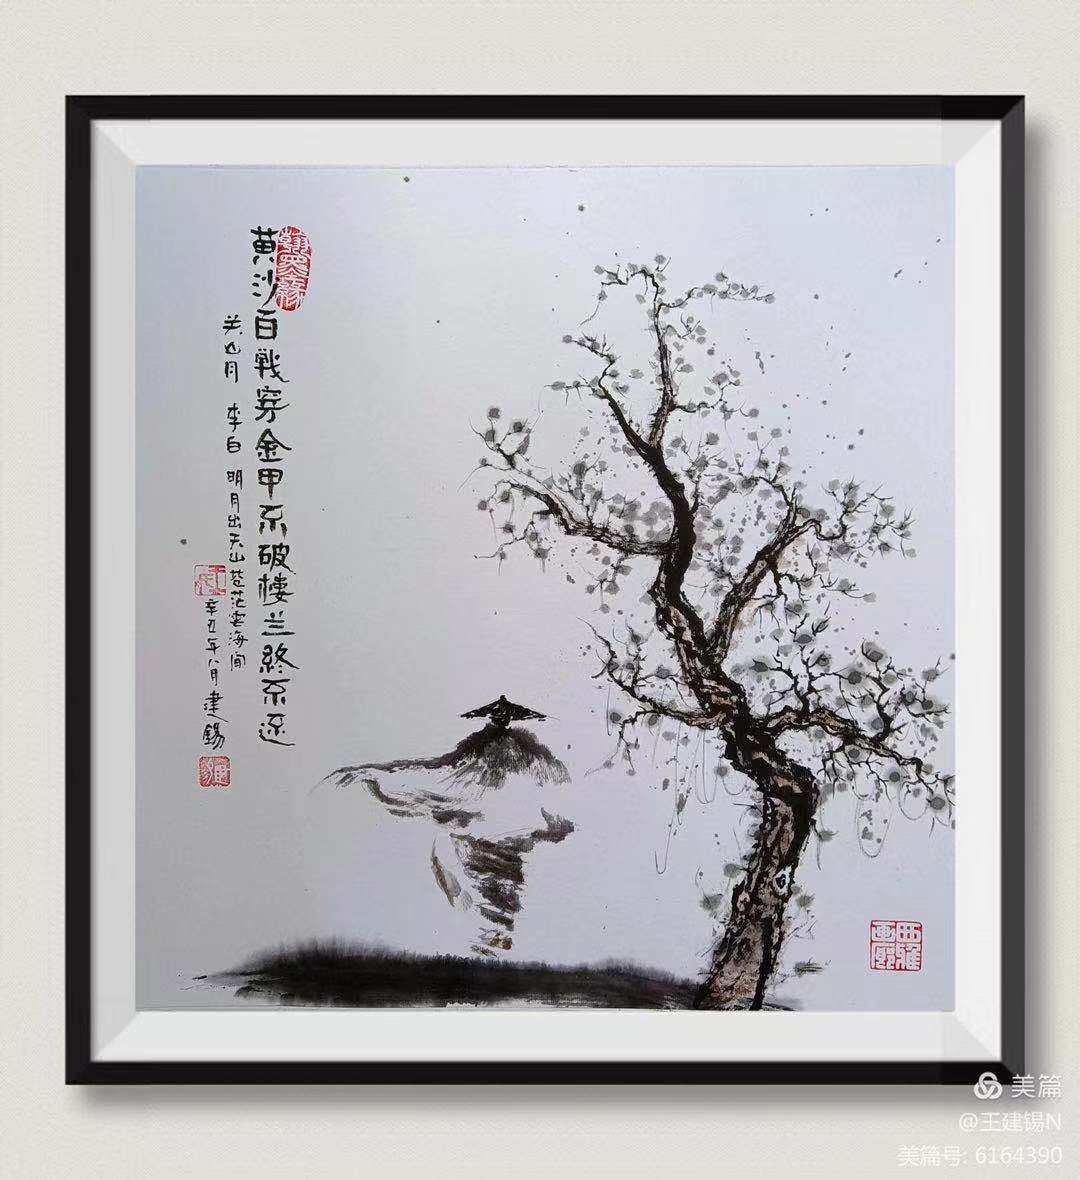 中国大众文化学会名人书画艺术发展委员会——王建锡